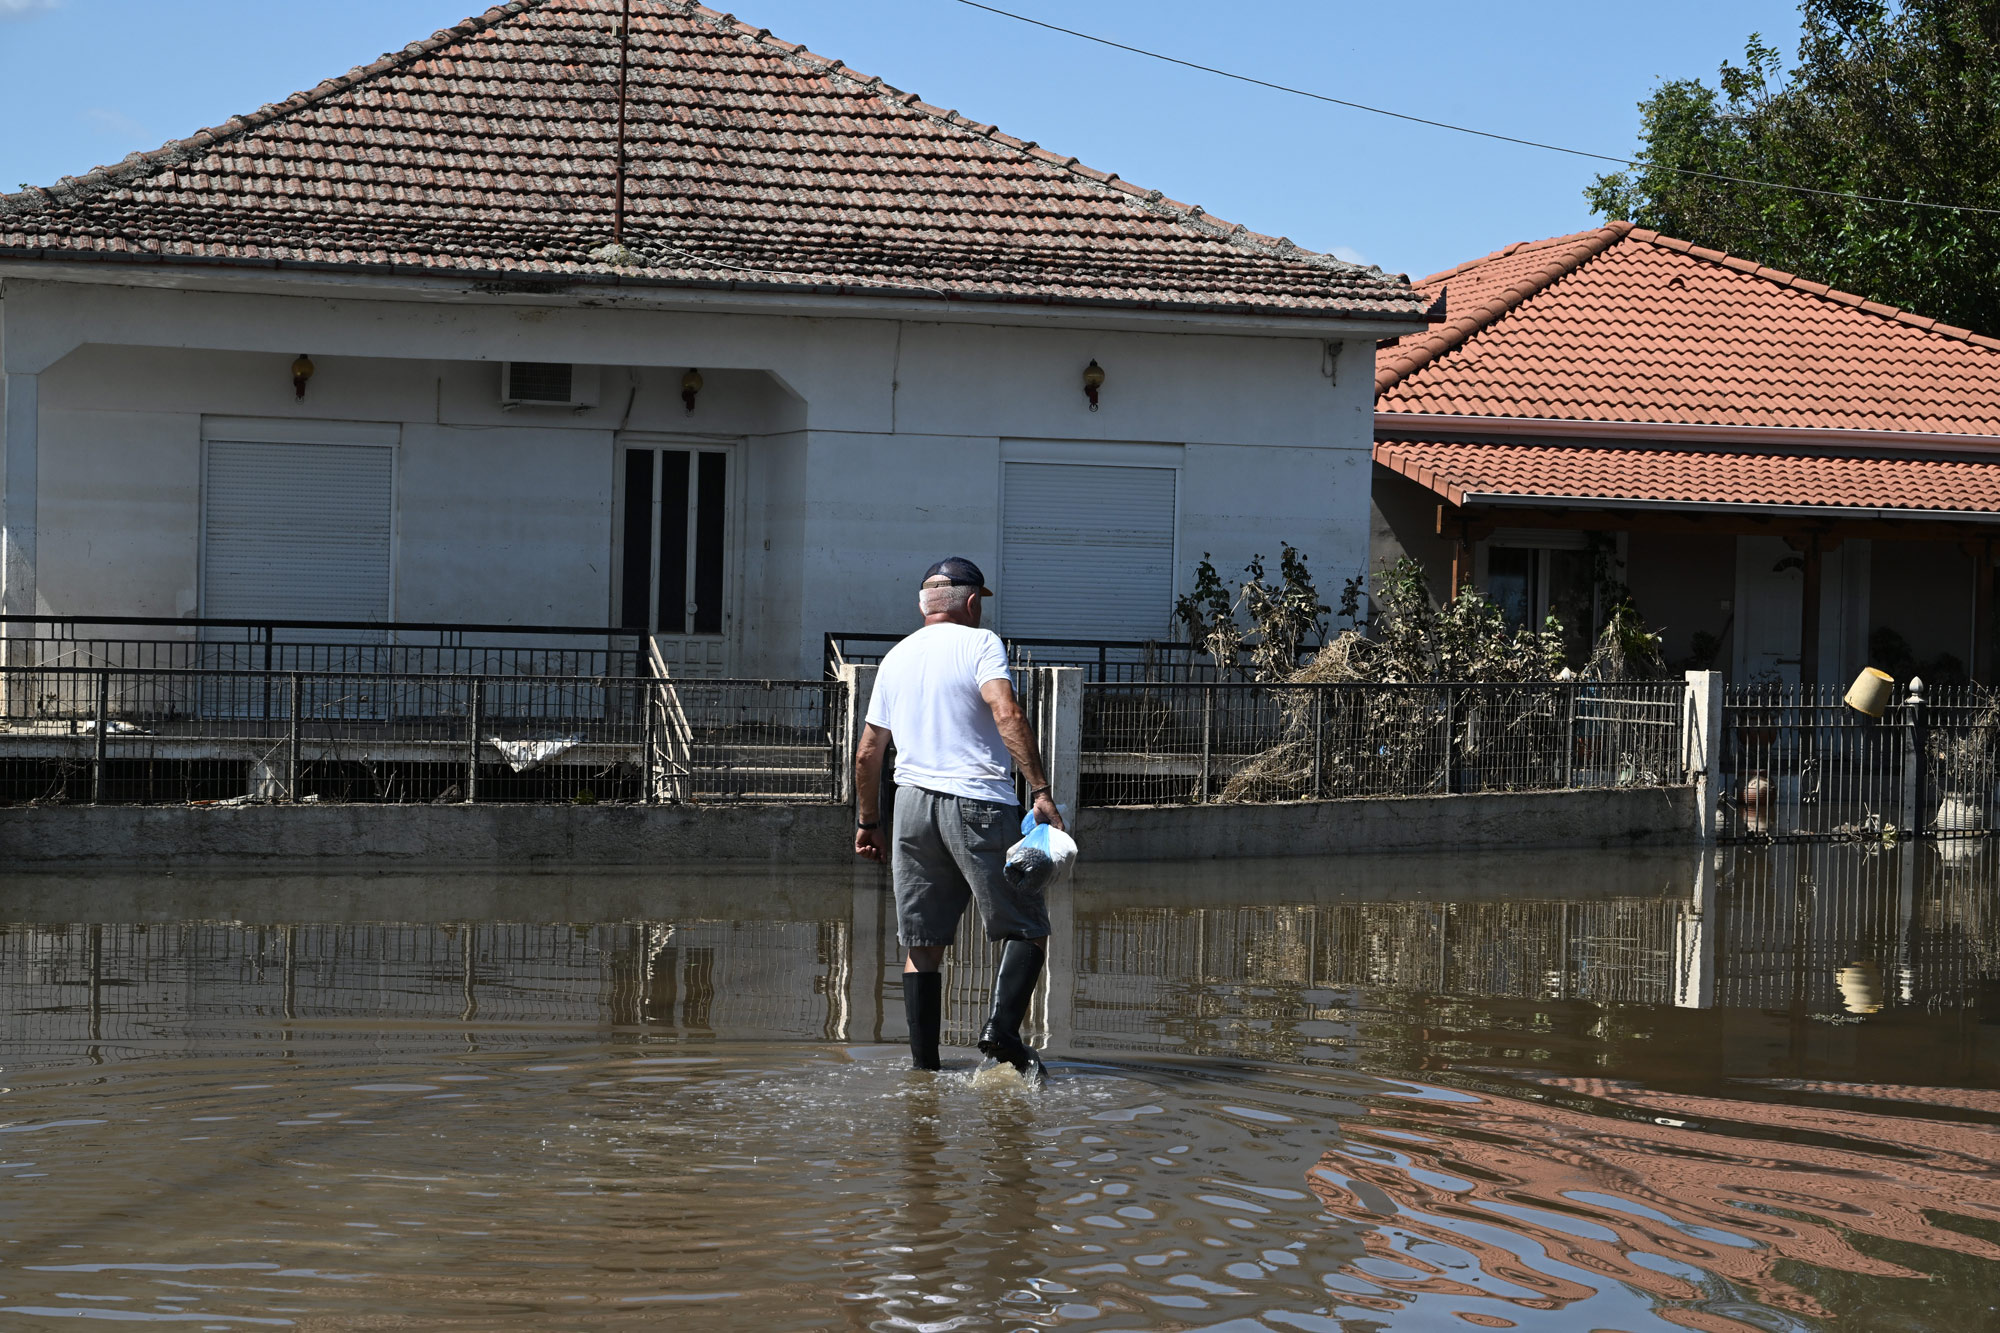 ΥΠΕΝ: Παραπλανητικοί οι ισχυρισμοί για διακοπές ηλεκτροδότησης σε πλημμυροπαθείς αγρότες